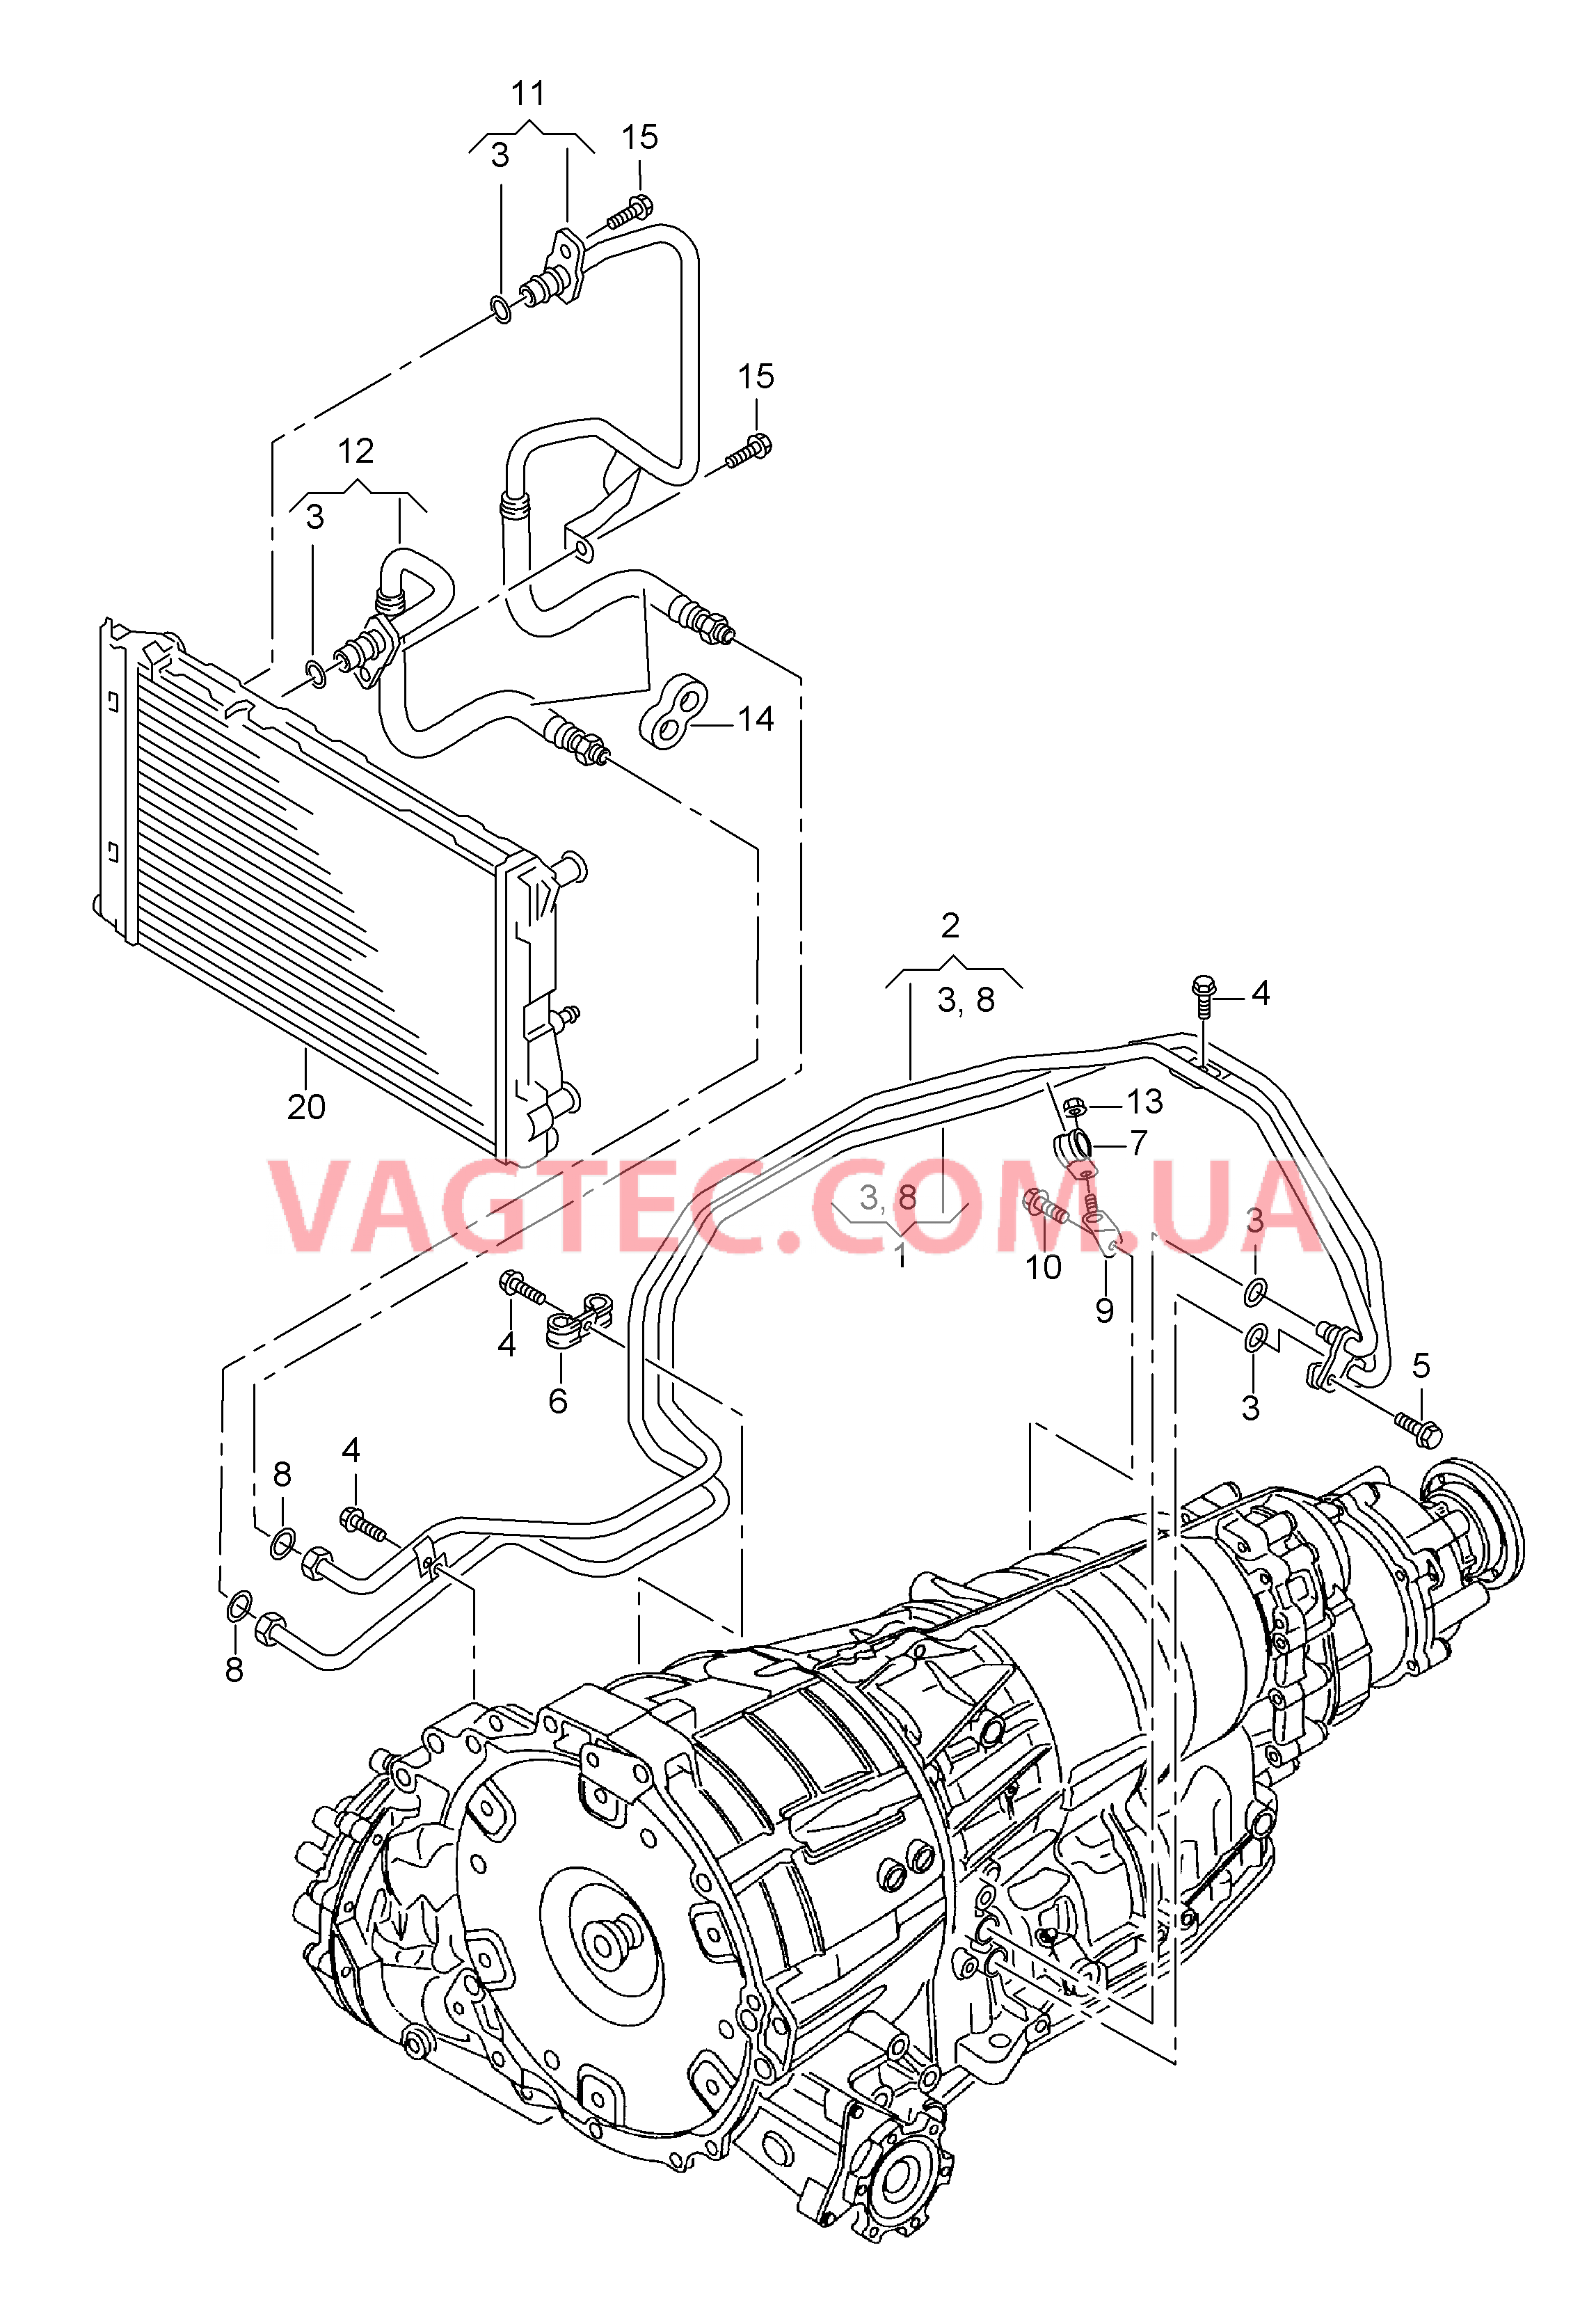 Напорный маслопровод для охлаждения масла коробки передач  8-ступенчатая АКП для а/м с гибридным приводом  для AUDI Q5 2015